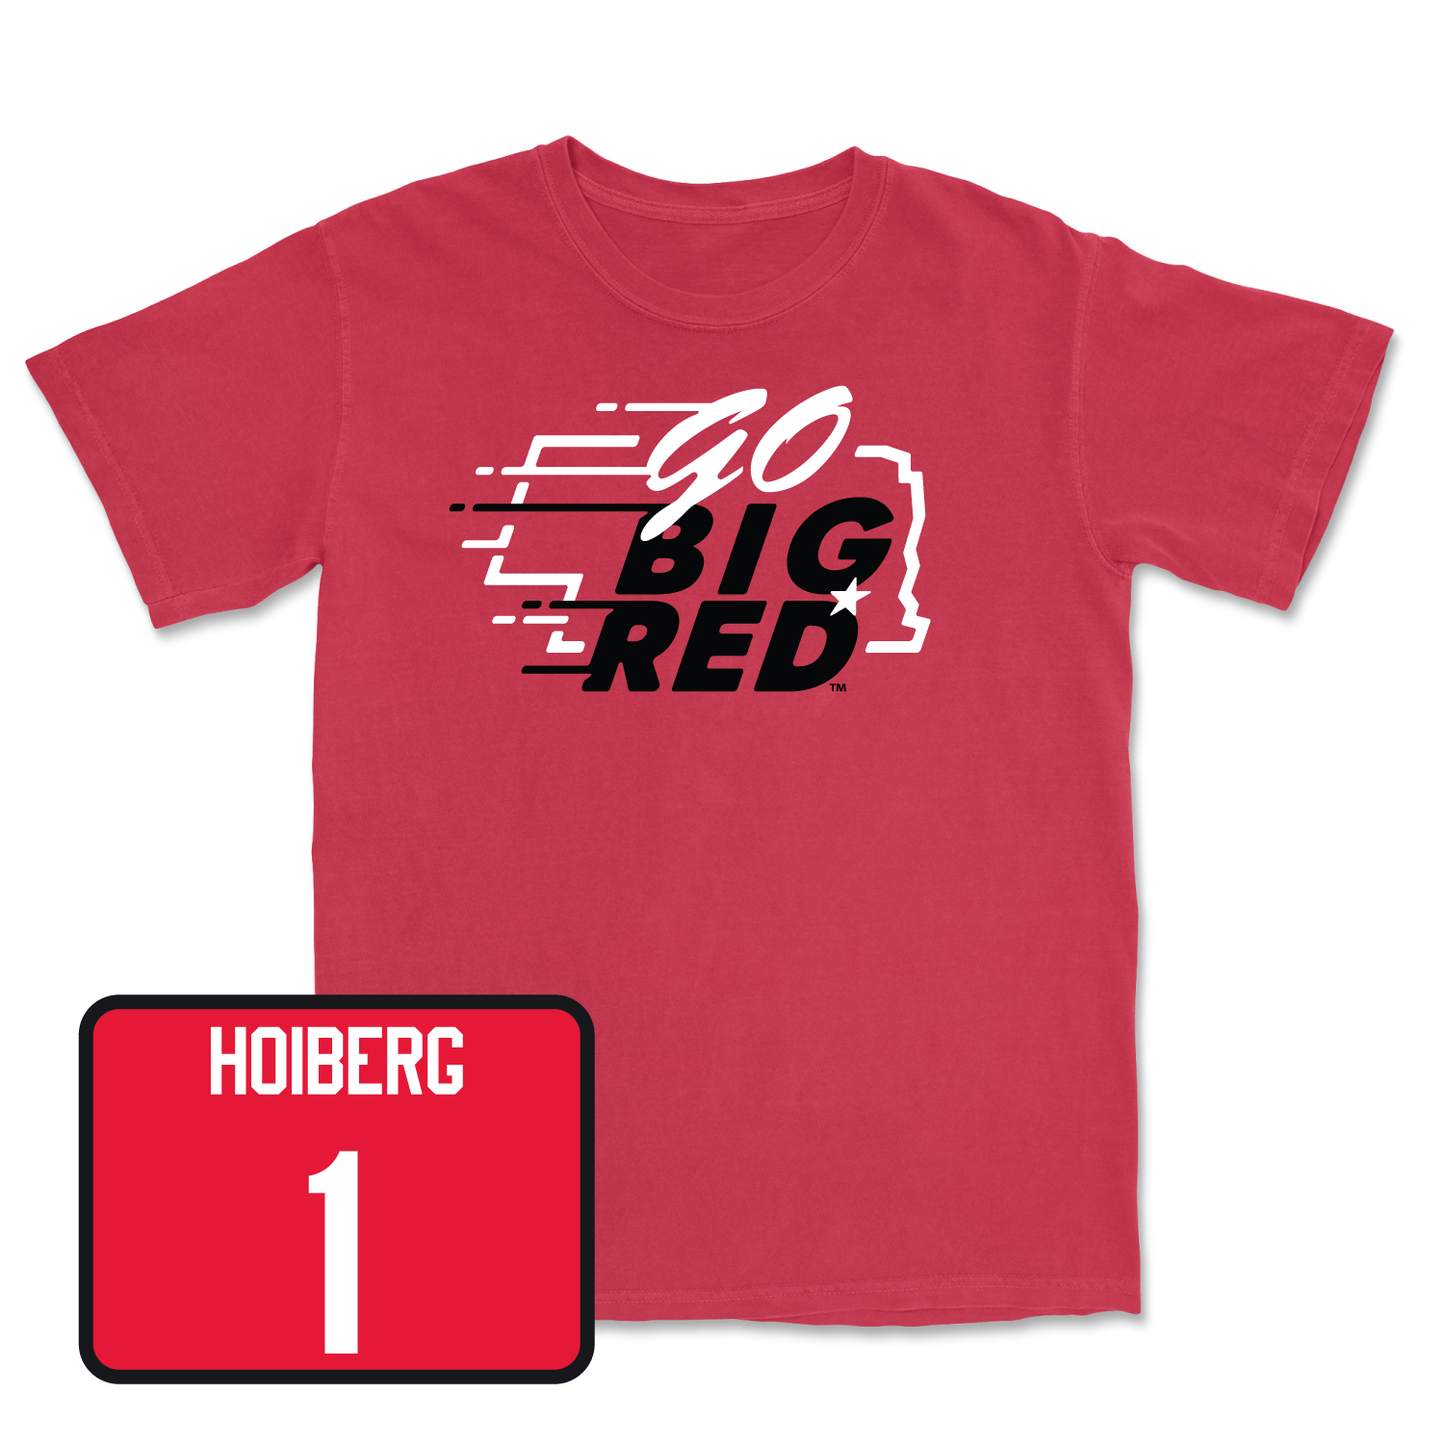 Red Men's Basketball GBR Tee X-Large / Samuel Hoiberg | #1